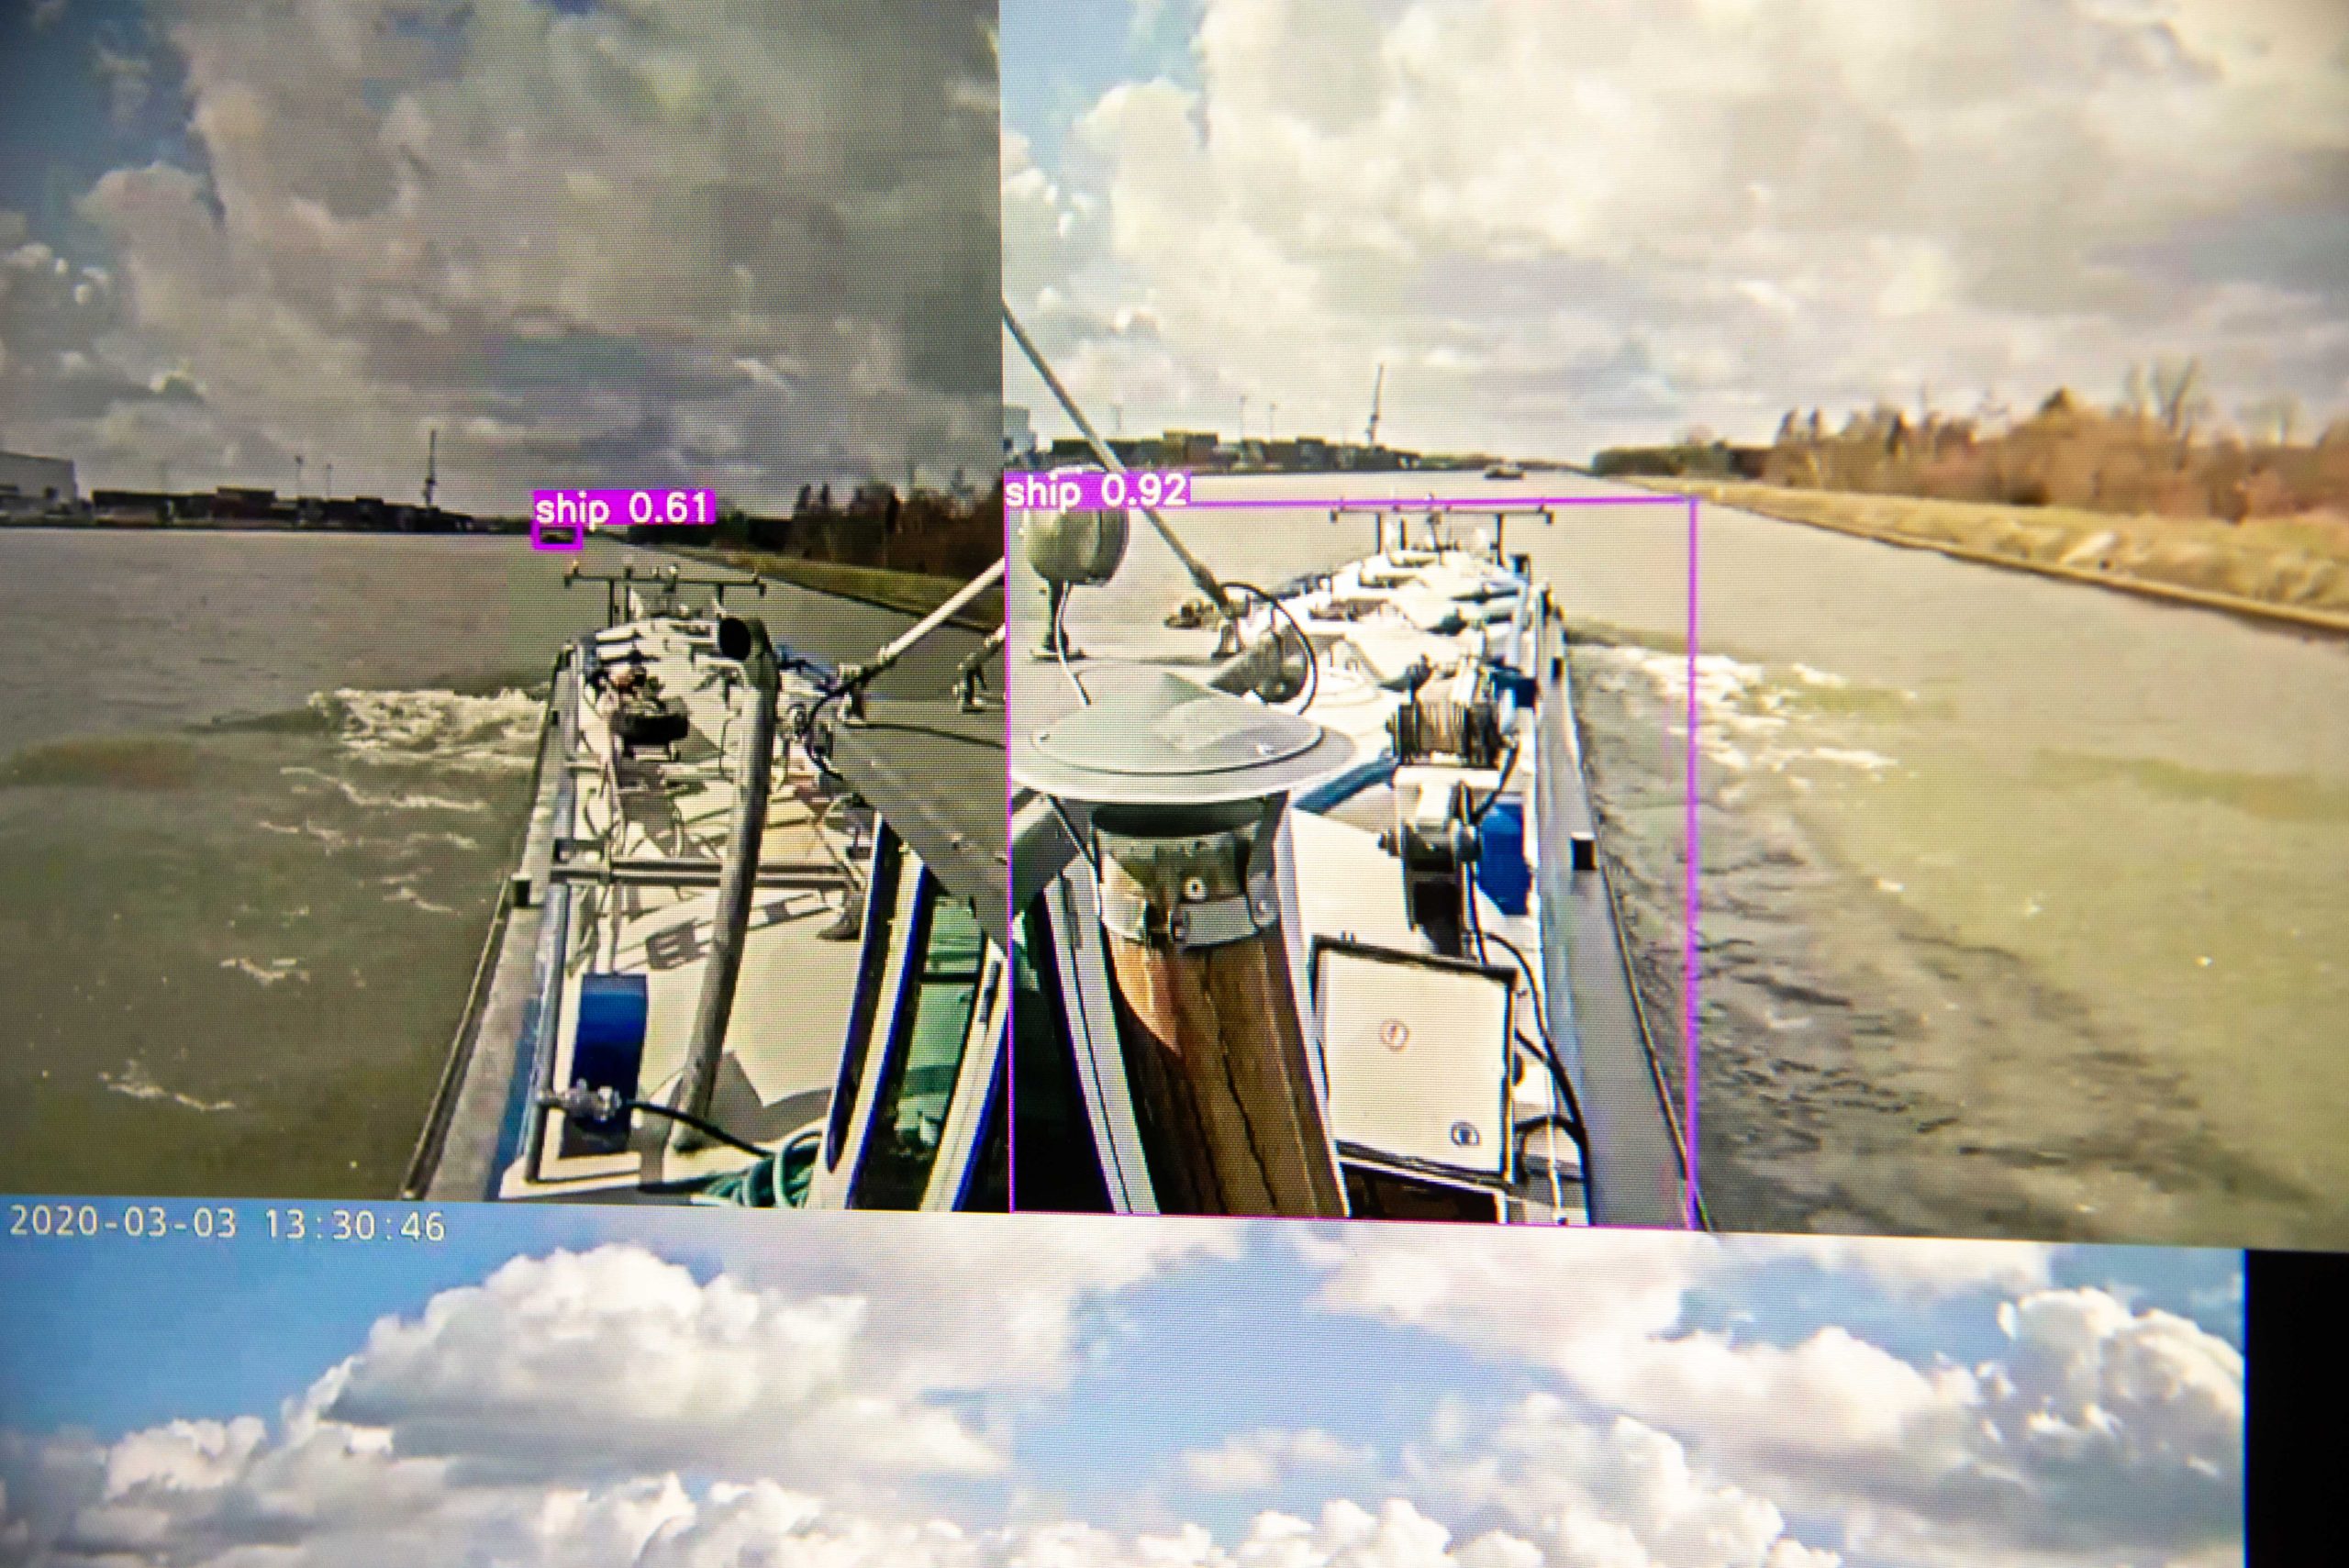 Via slimme software detecteert het systeem van Seafar andere schepen op de camerabeelden die naar de wal worden gezonden.